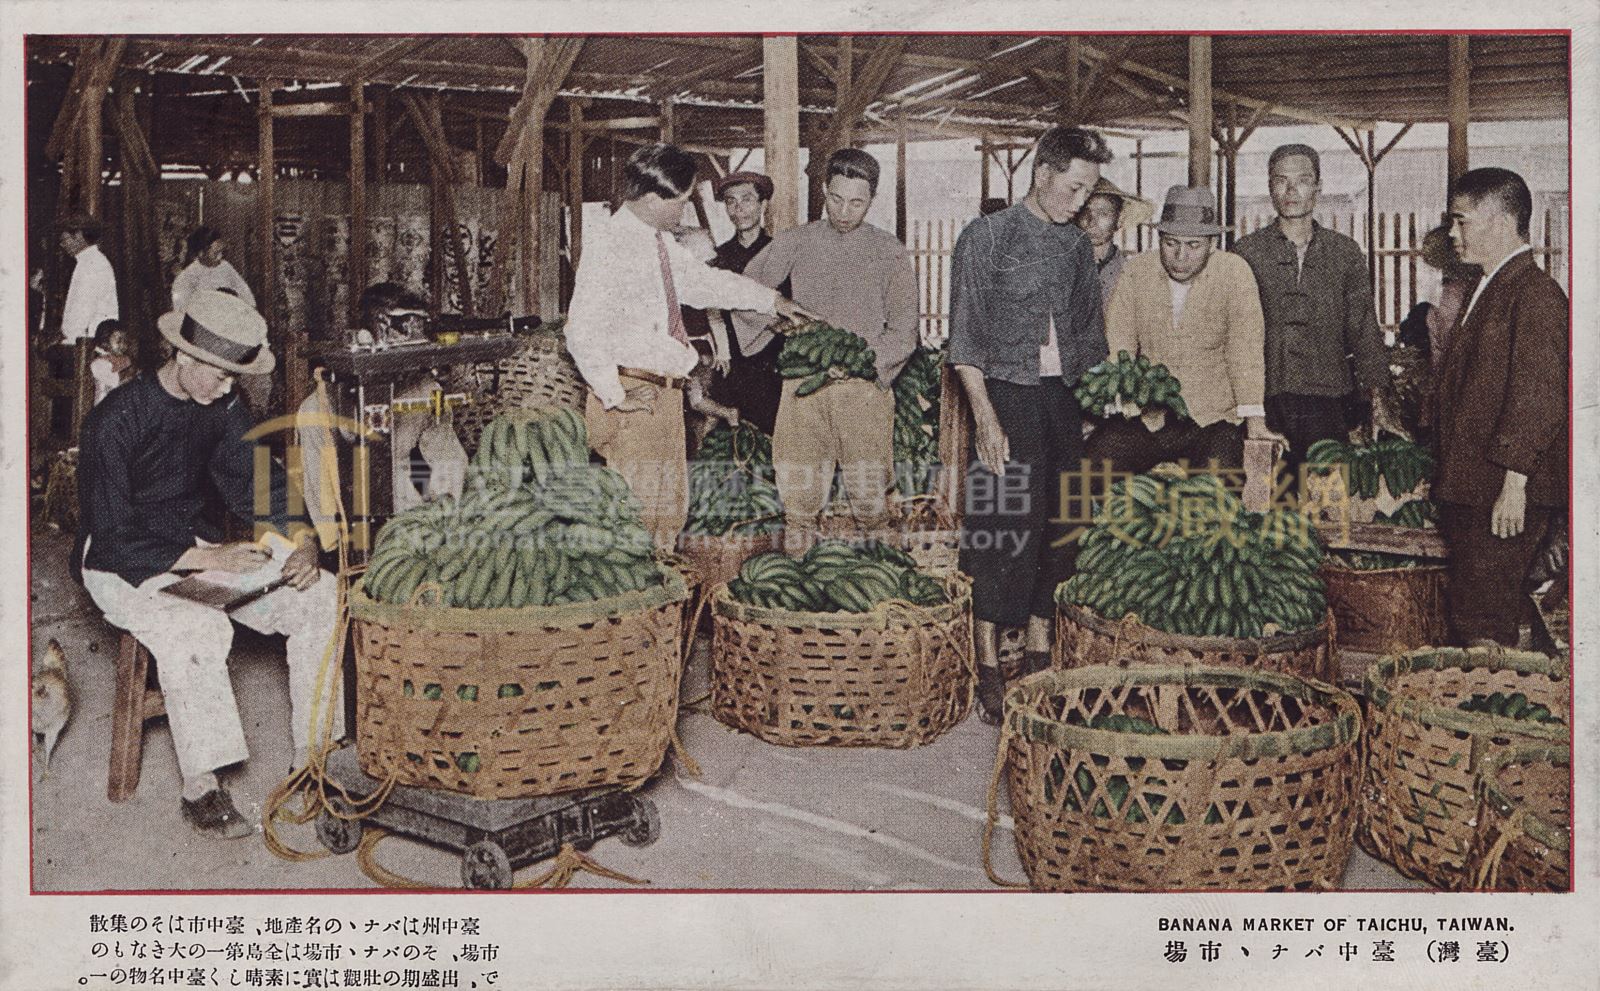 臺中香蕉市場